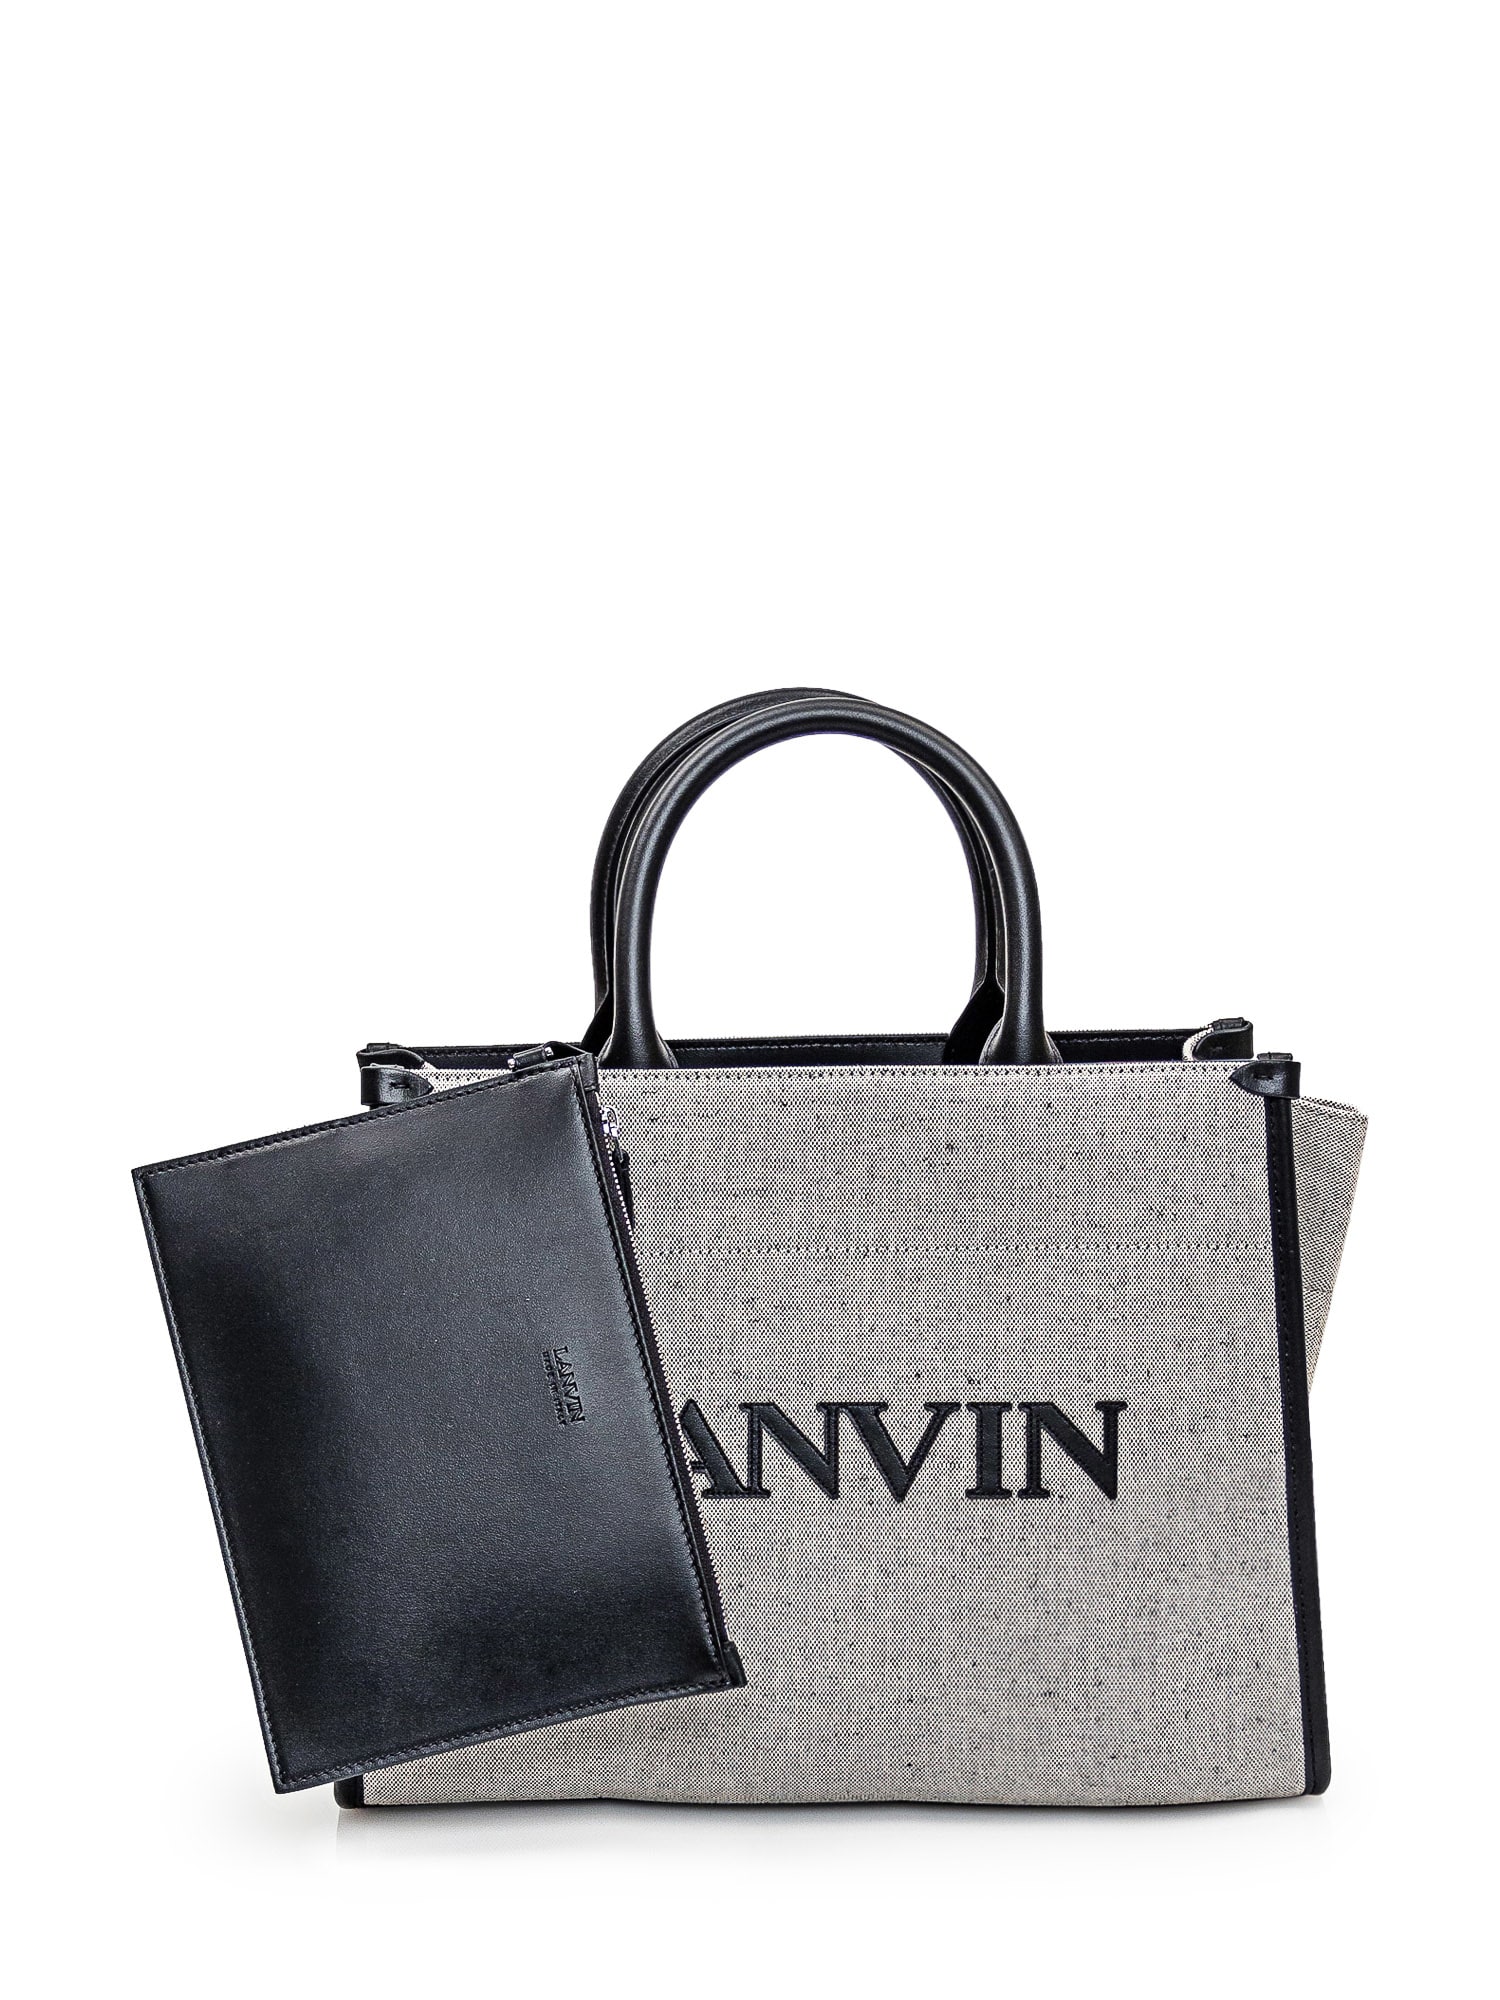 Shop Lanvin Tote Bag In Beige/black